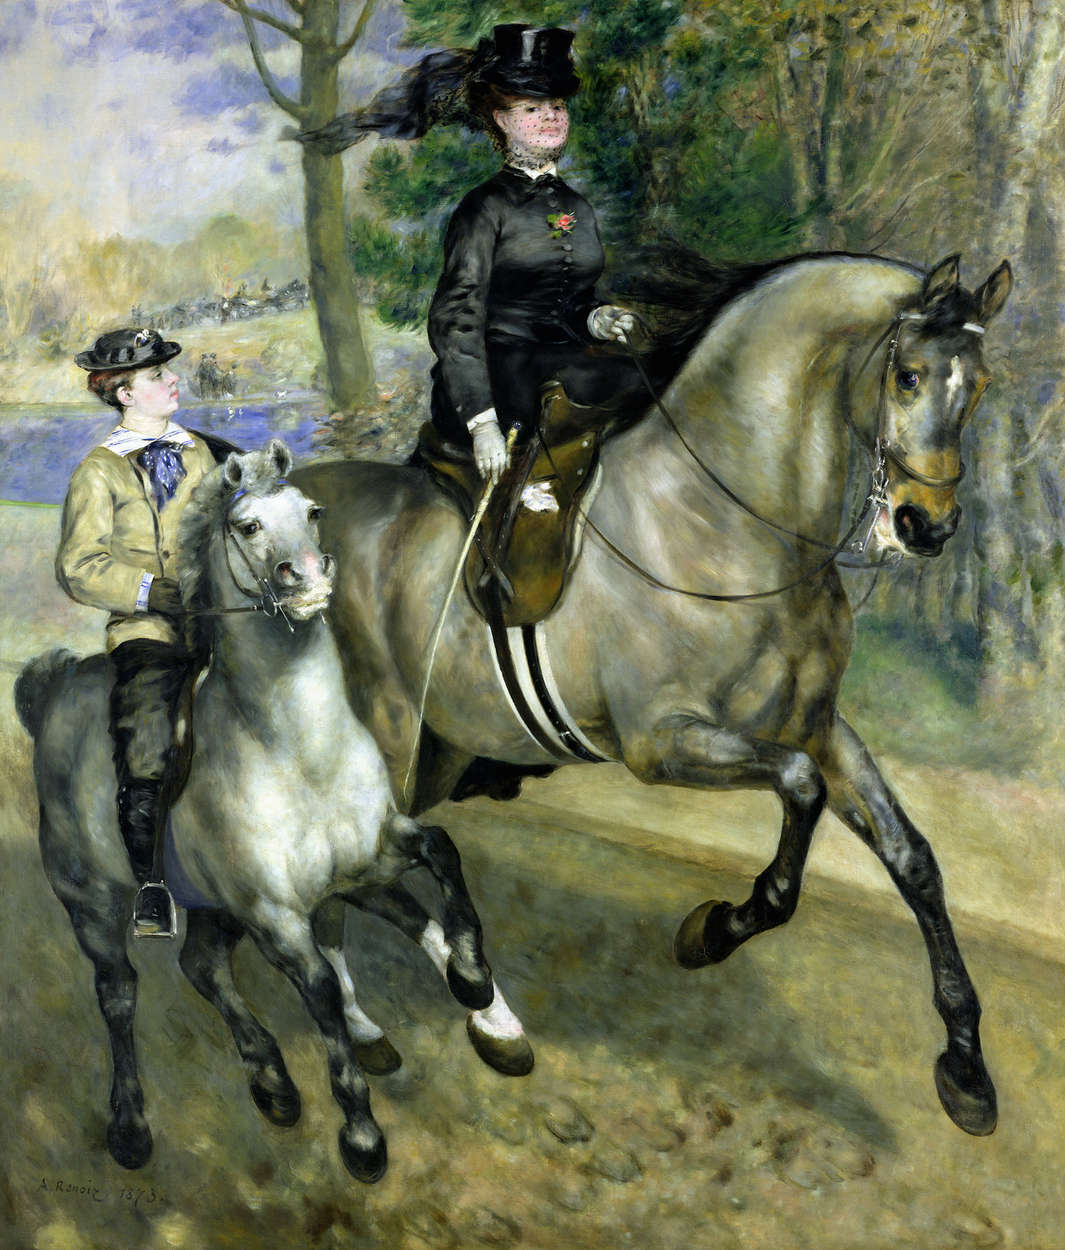             Fototapete "Reiterin im Bois de Boulogne" von Pierre Auguste Renoir
        